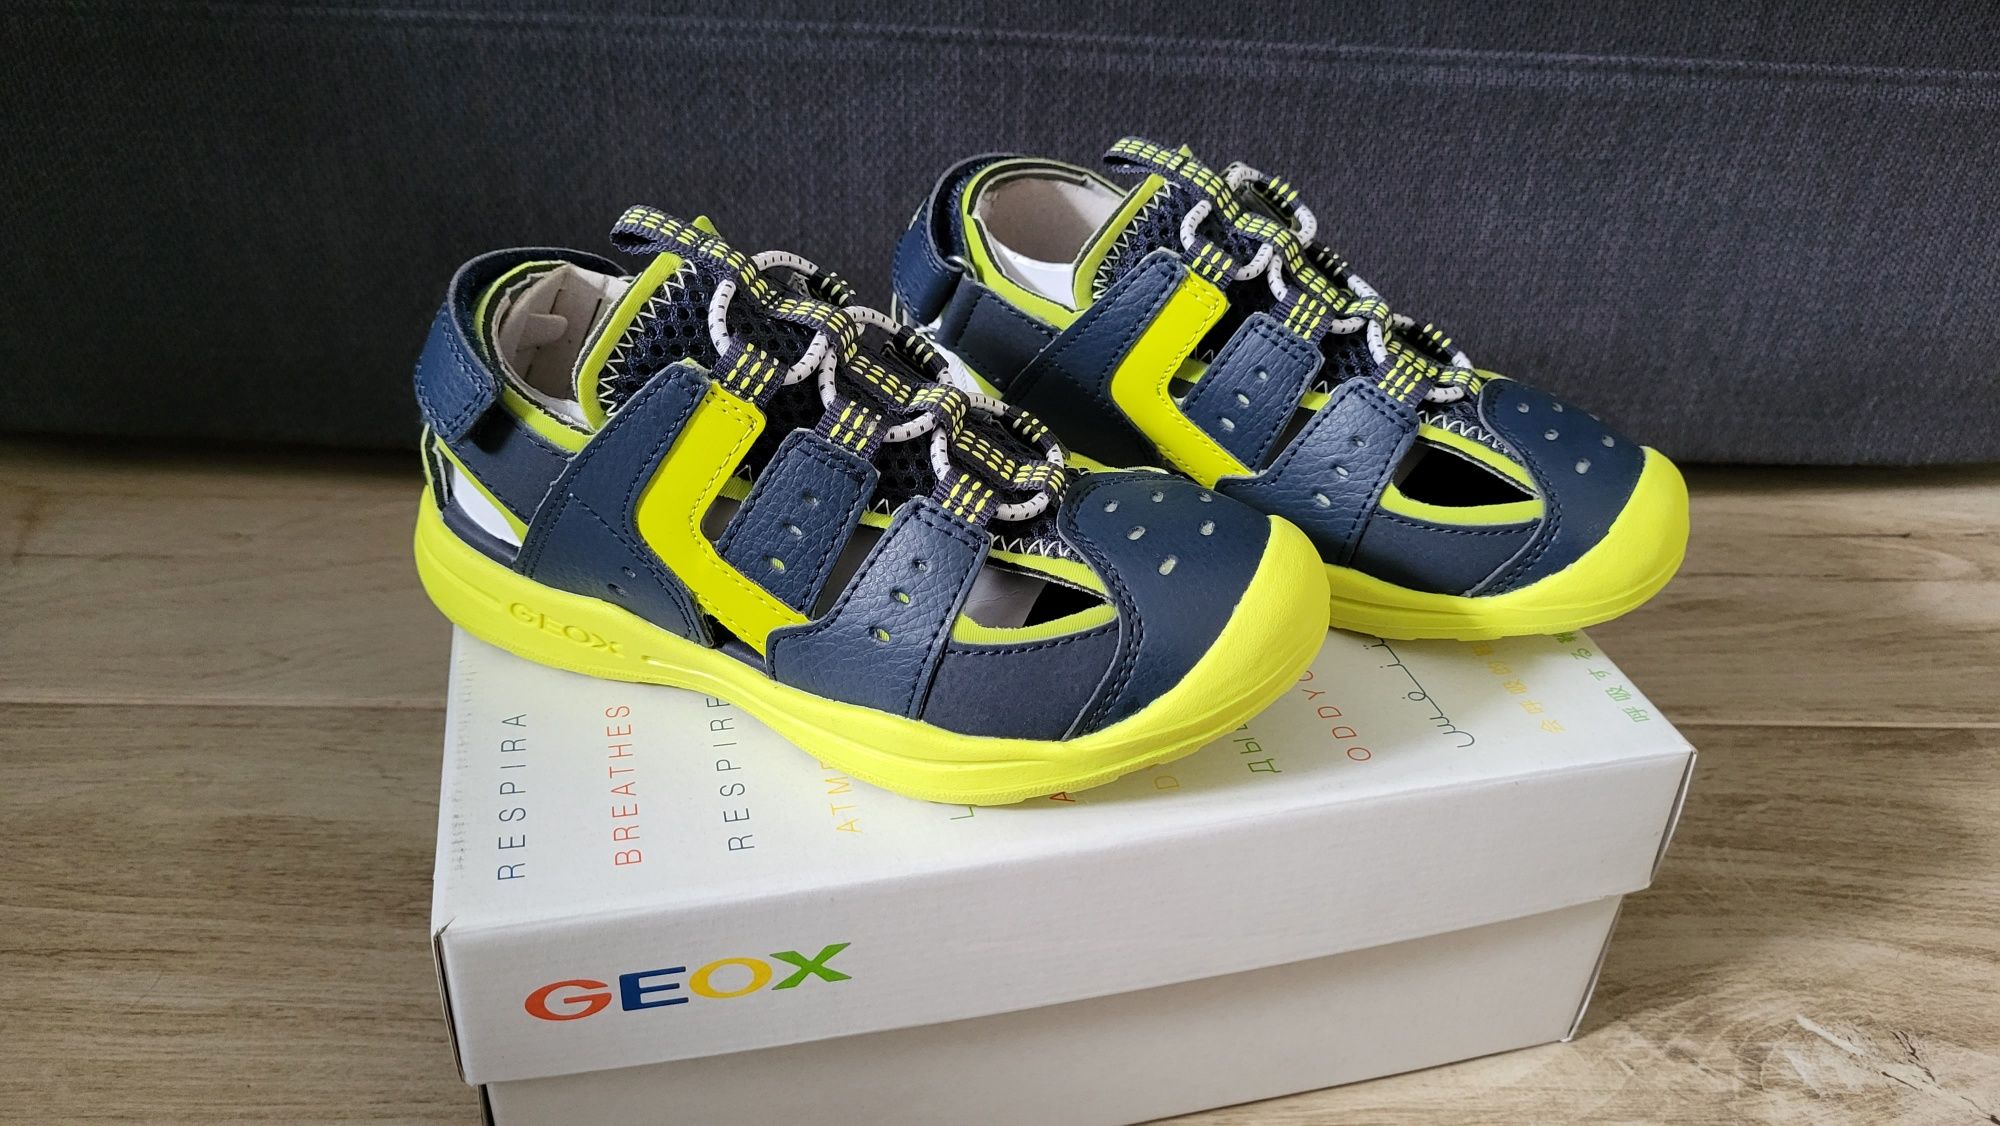 Nowe sandały Geox rozmiar 30 wkładka 18.5cm